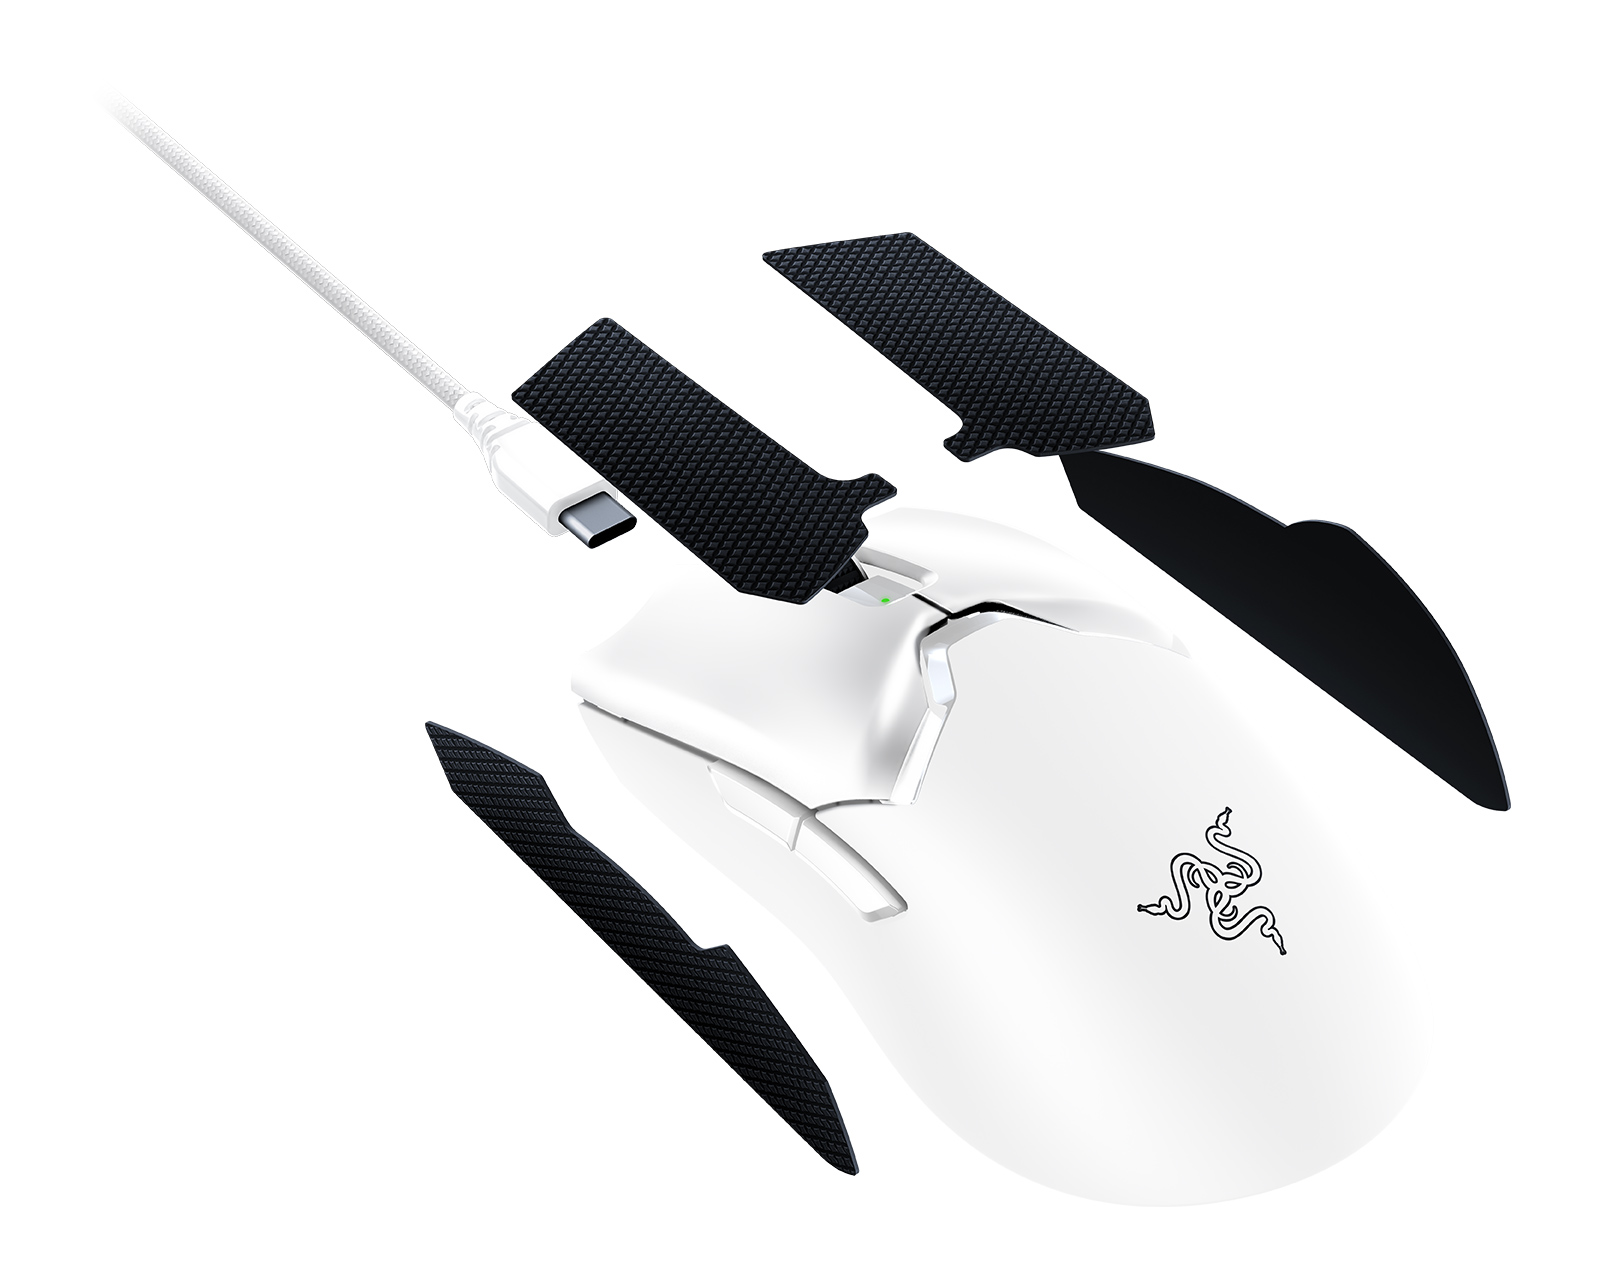 Razer Viper V2 PRO Wireless Gaming Mouse - White